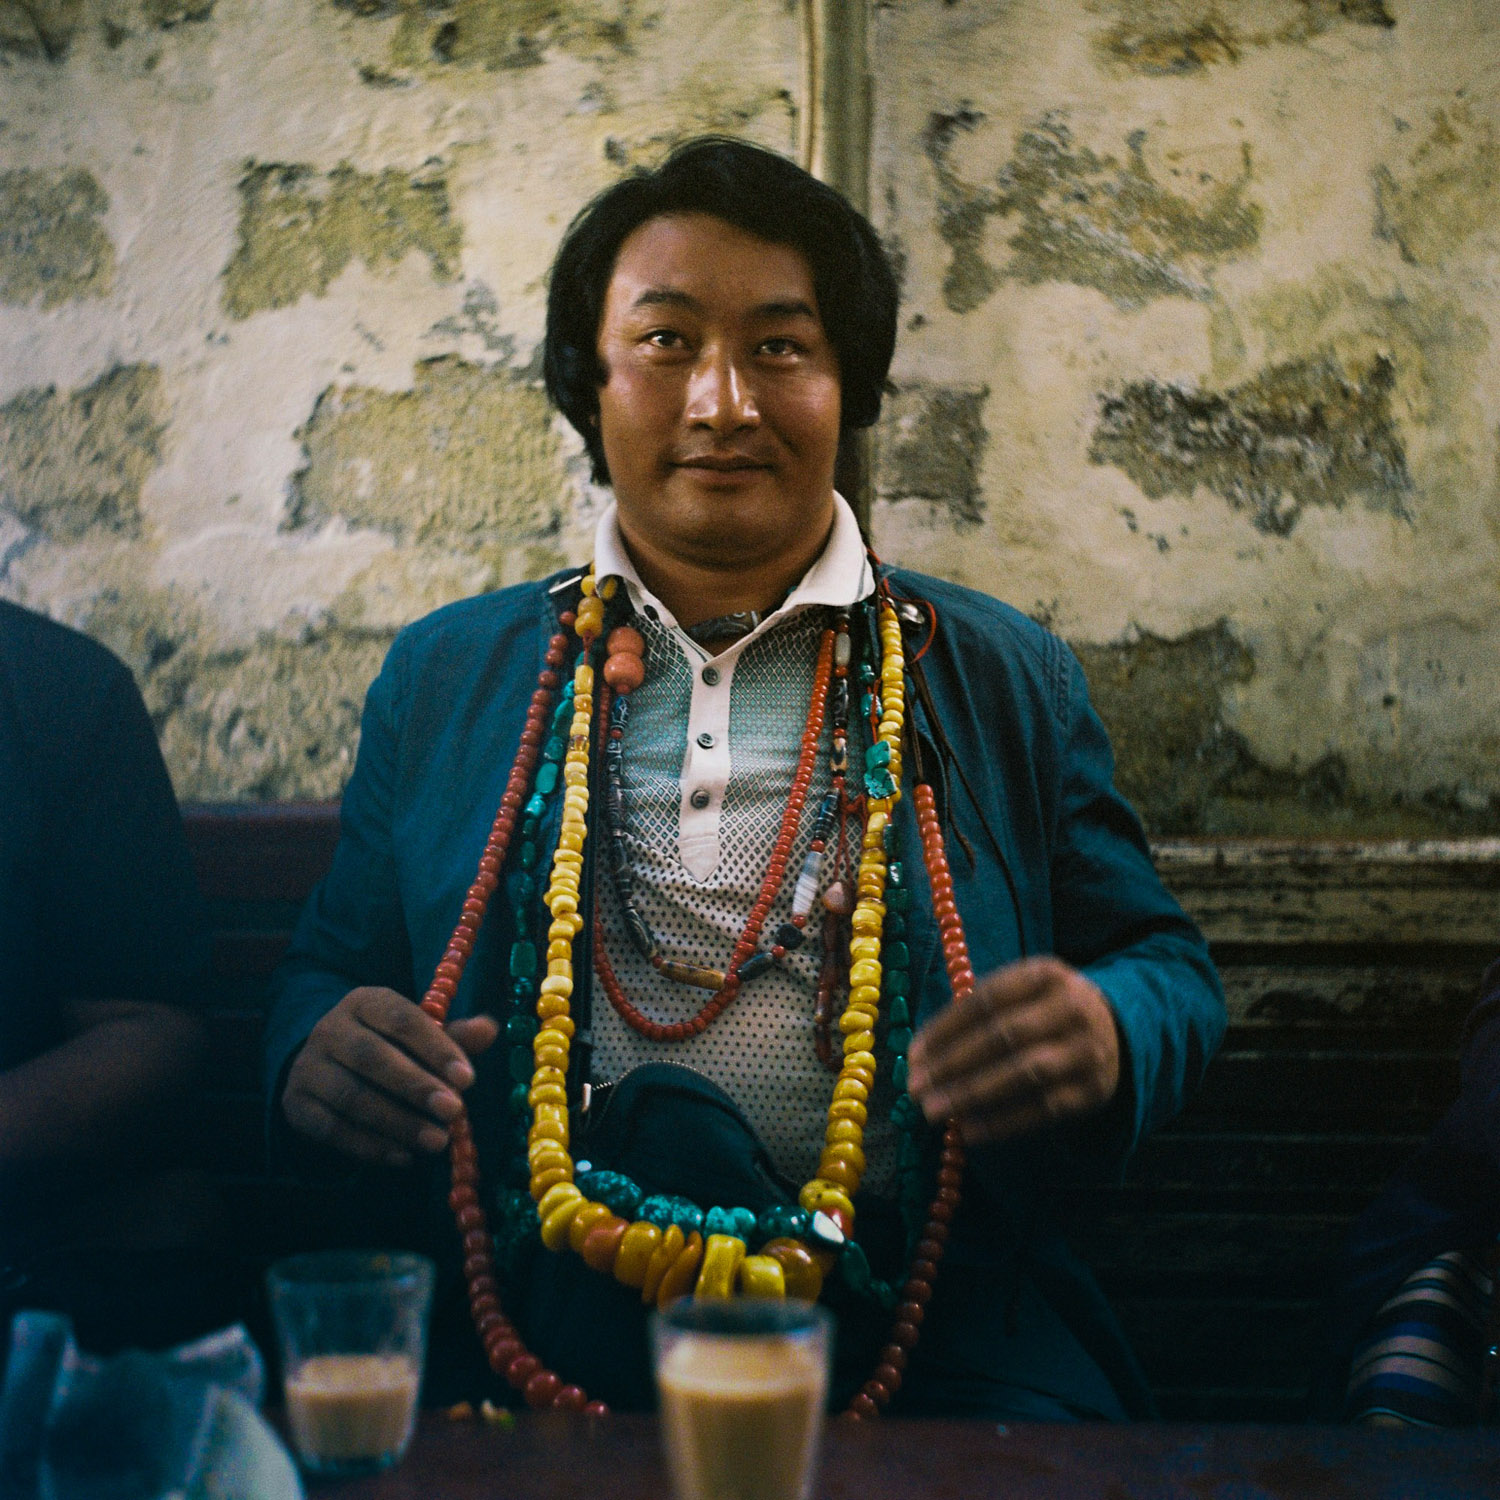 Man with beads, Lhasa.jpg